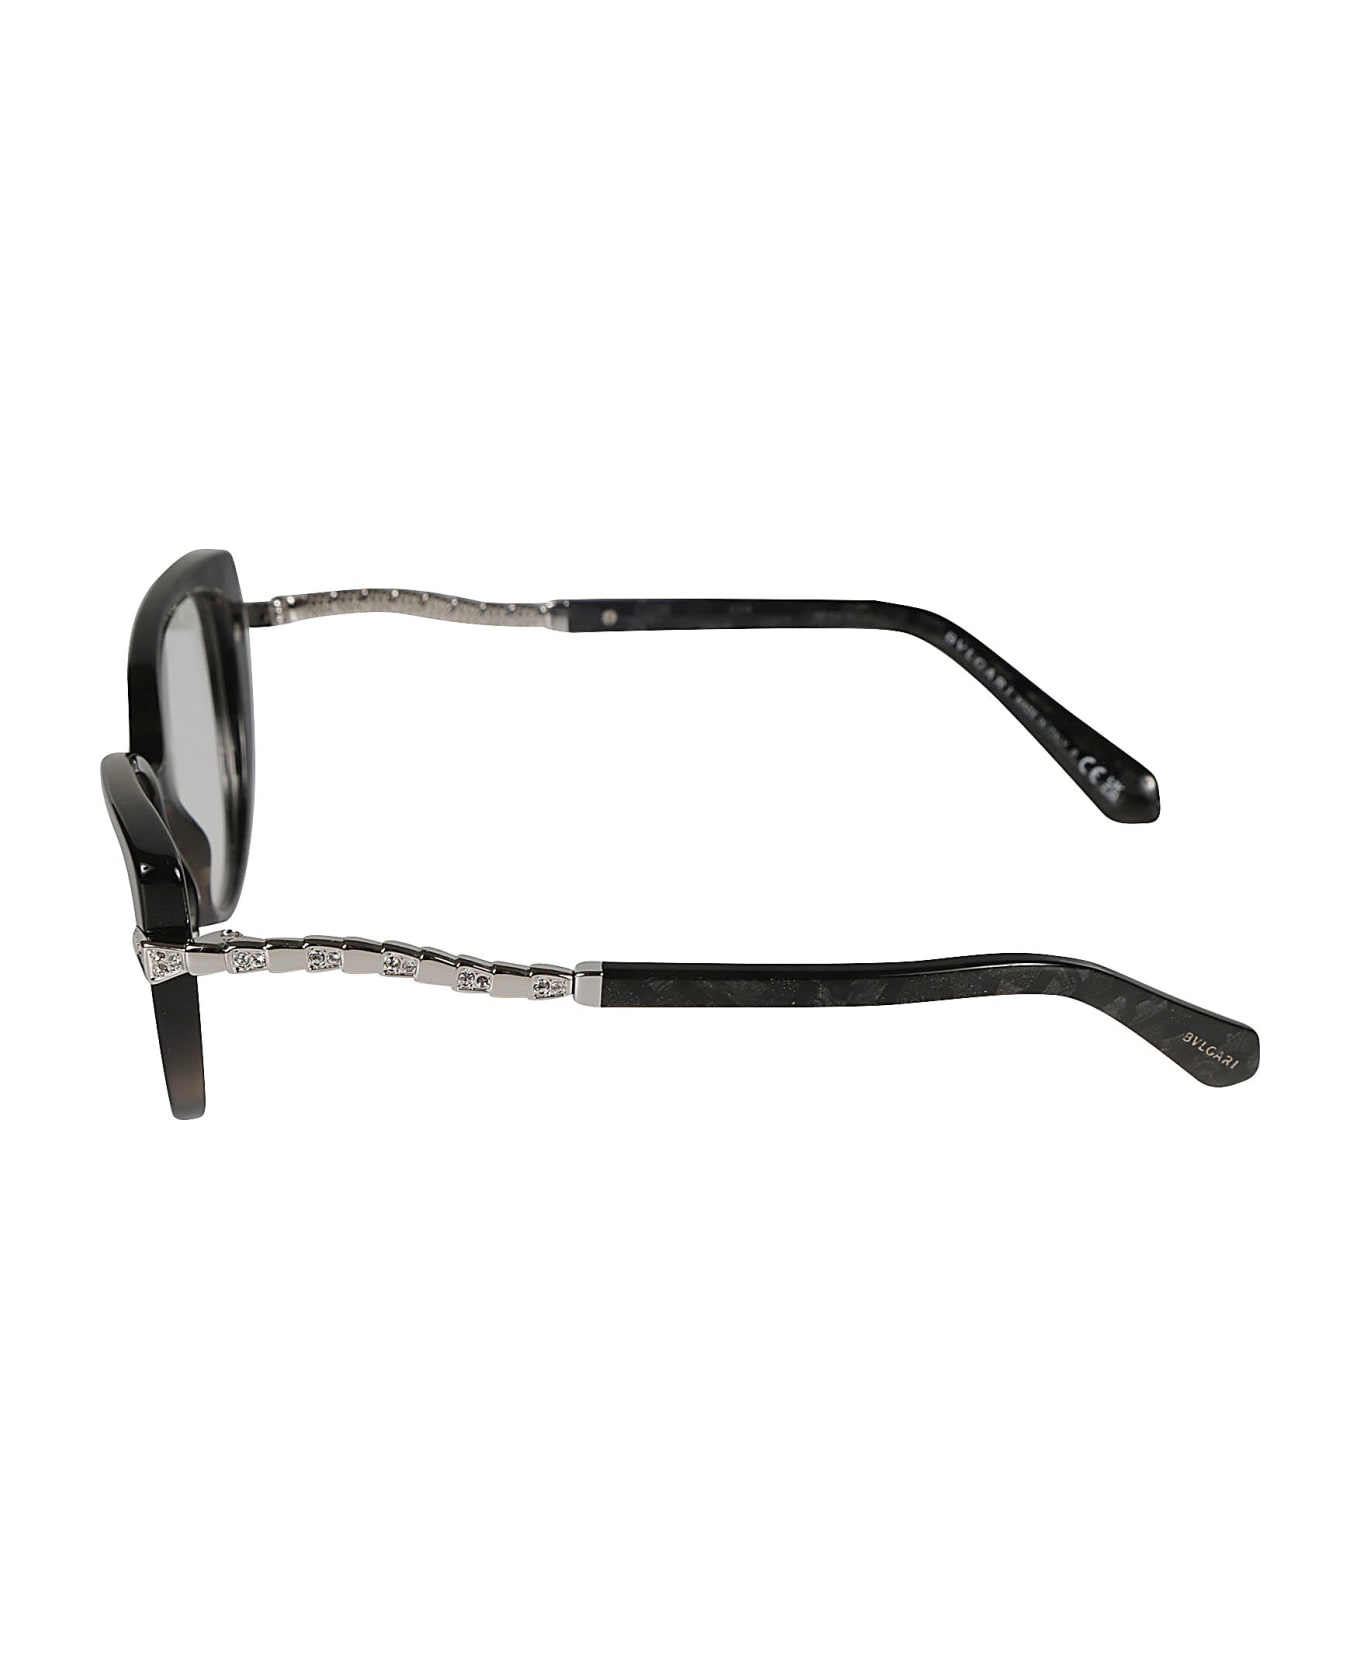 Bulgari Crystal Embellished Cat-eye Glasses - 5412 アイウェア